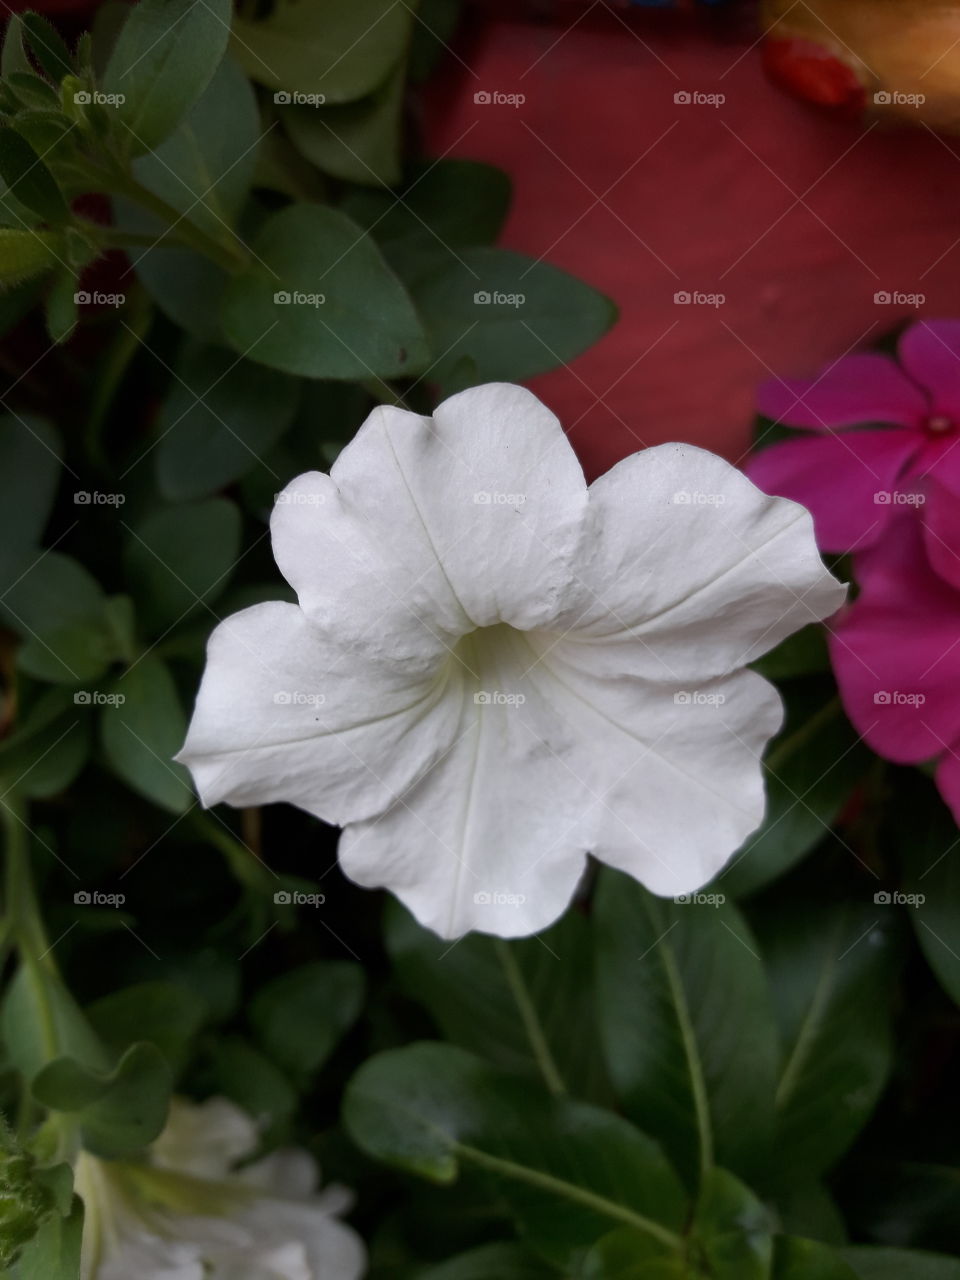 white delicate petal flower.